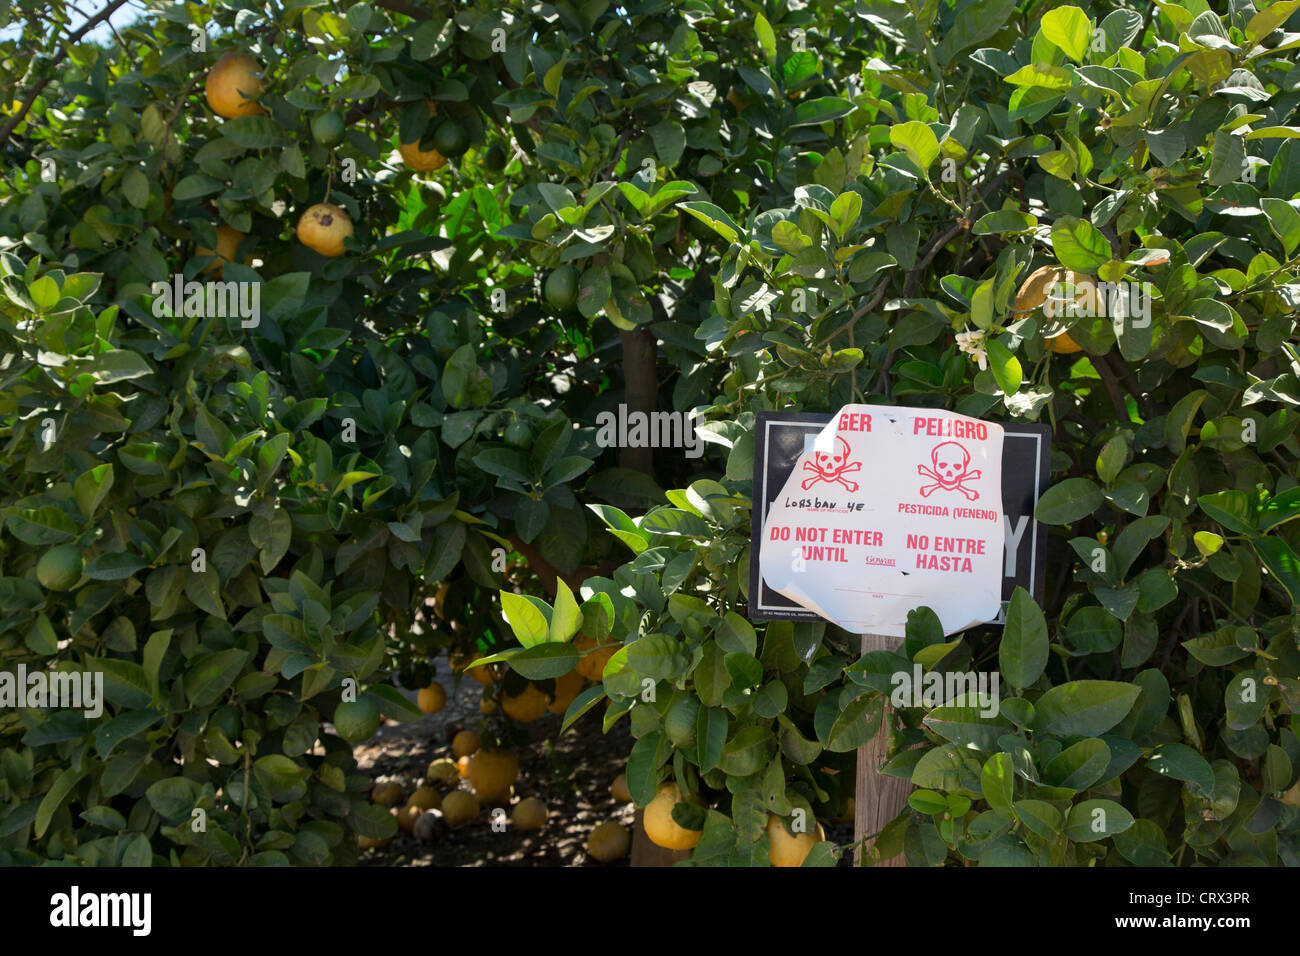 Un segno avverte dell'applicazione del pesticida Lorsban (Clorpirifos) in California Orange grove Foto Stock